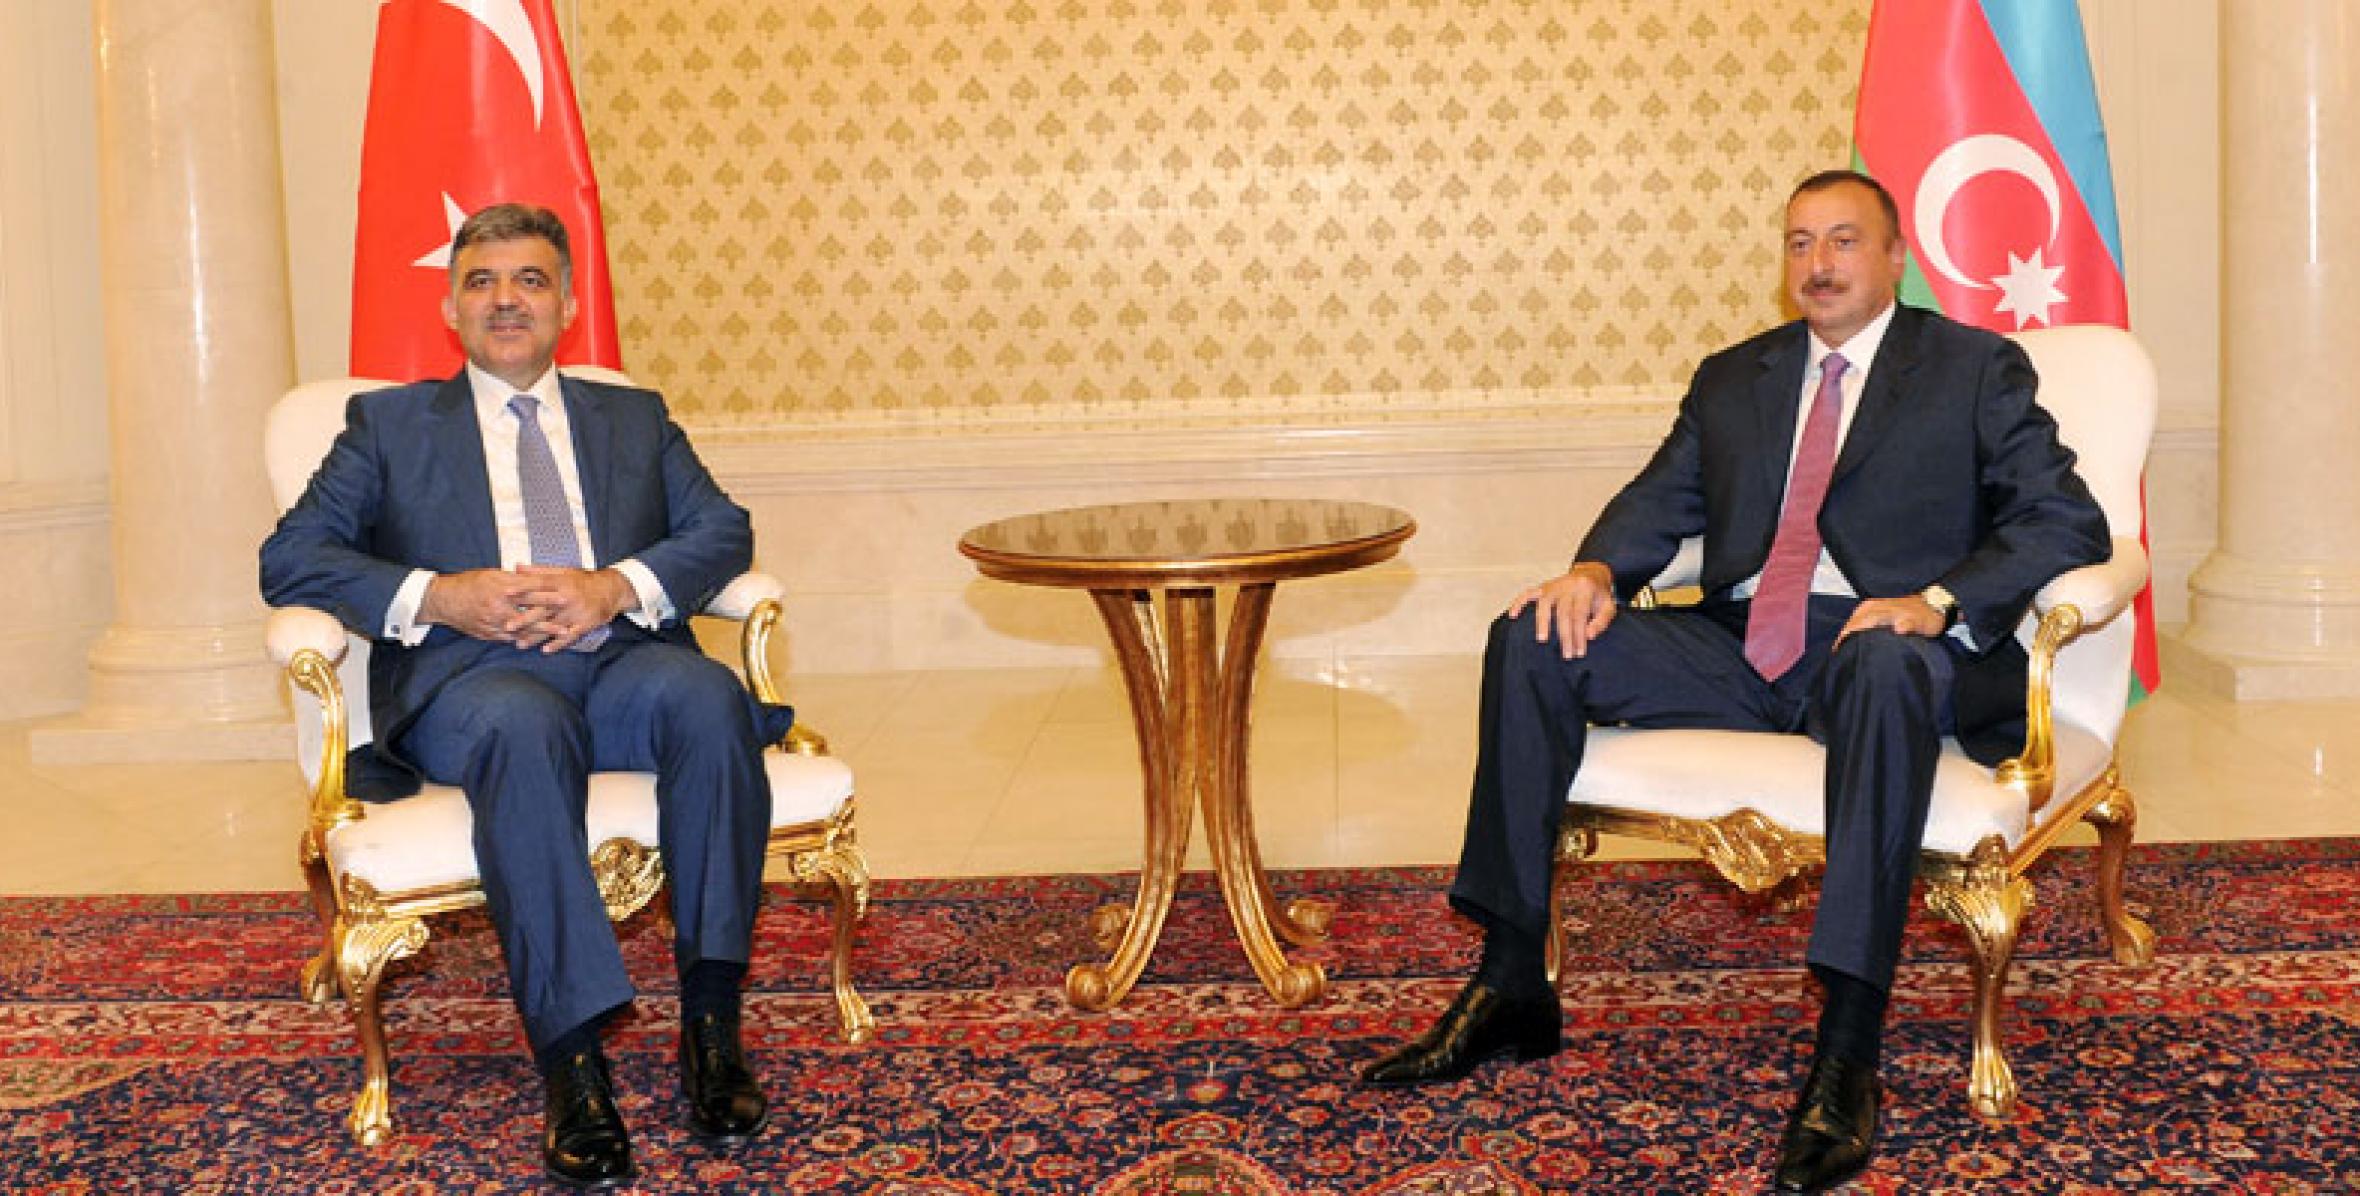 Состоялась встреча Ильхама Алиева и Президента Турции Абдуллаха Гюля один на один